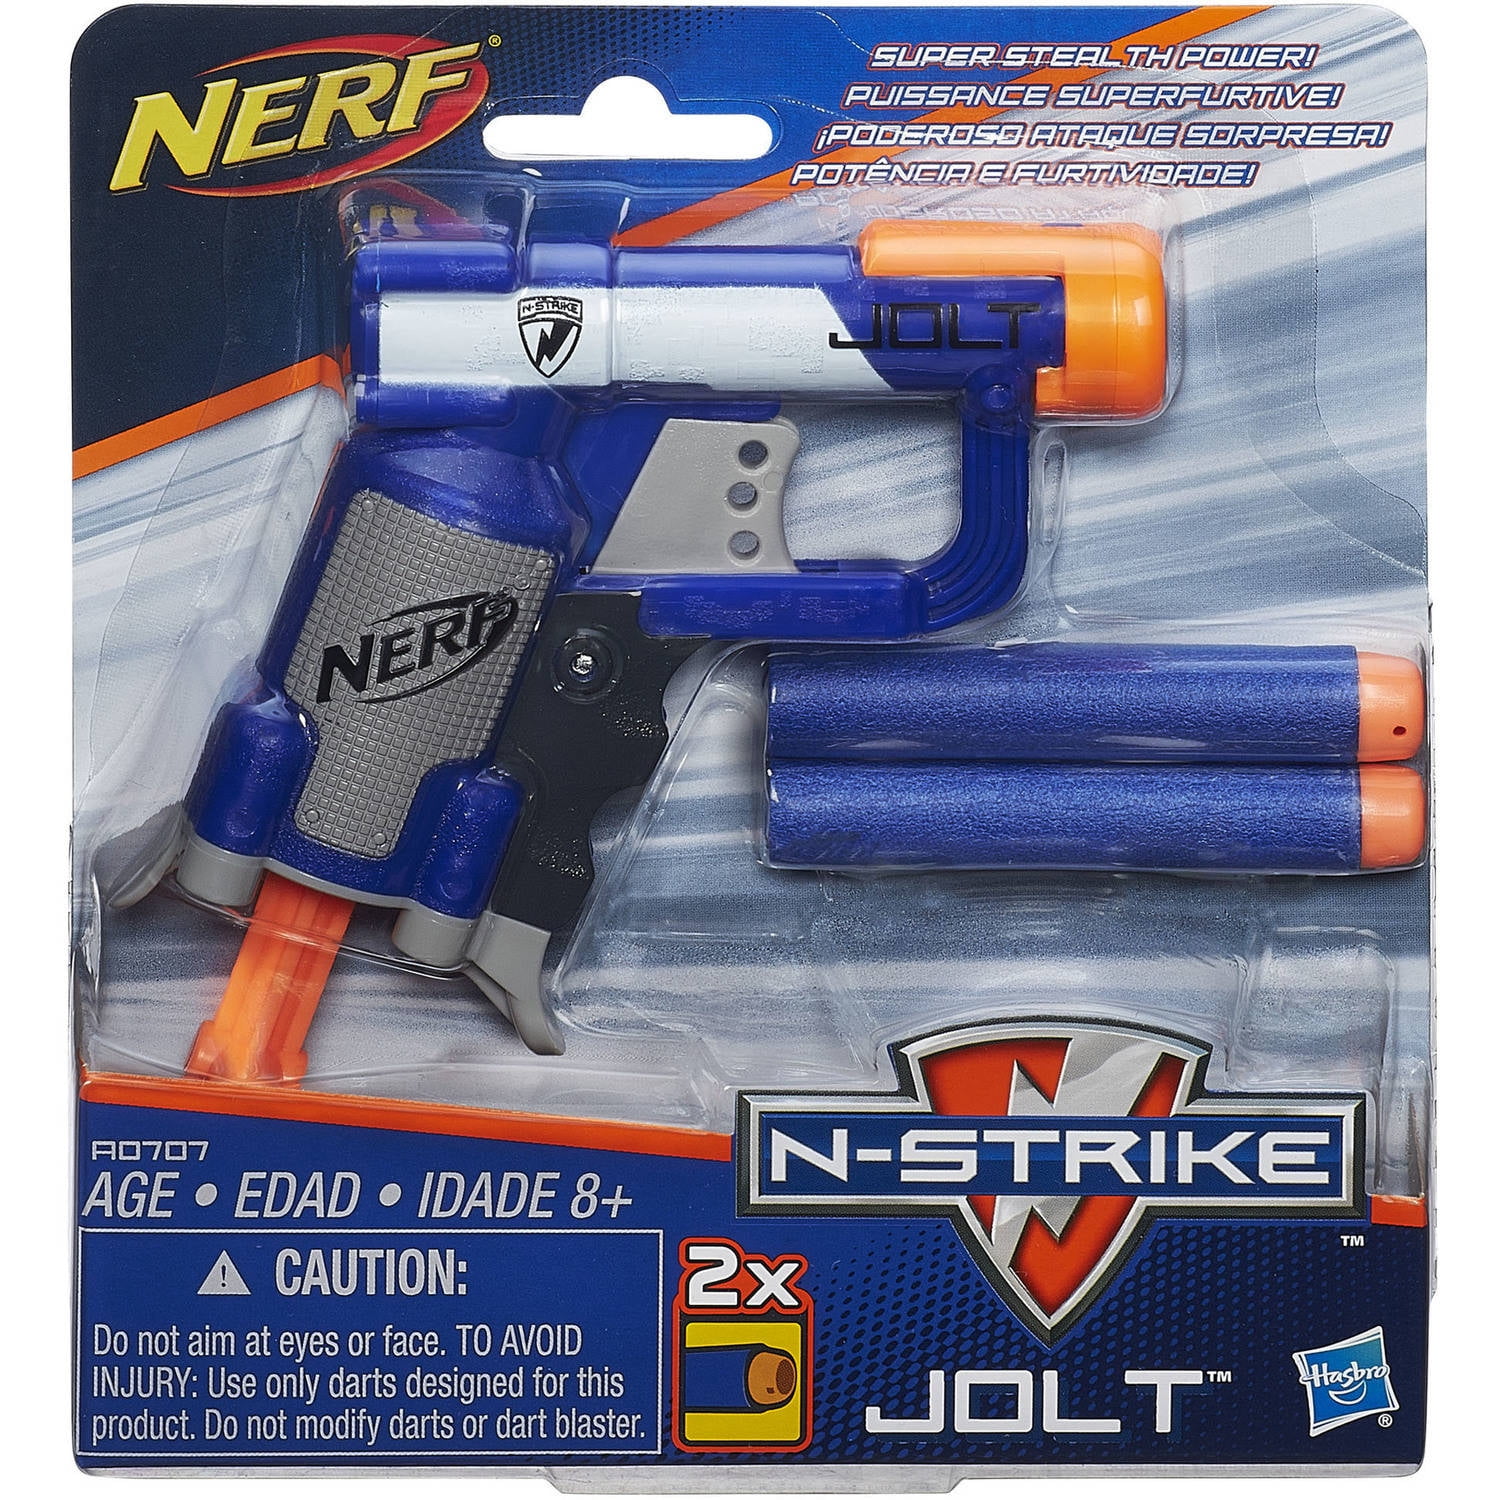 Lançador Nerf Elite 2.0 Tetrad Qs-4, Lança 4 Dardos ao Mesmo Tempo - F